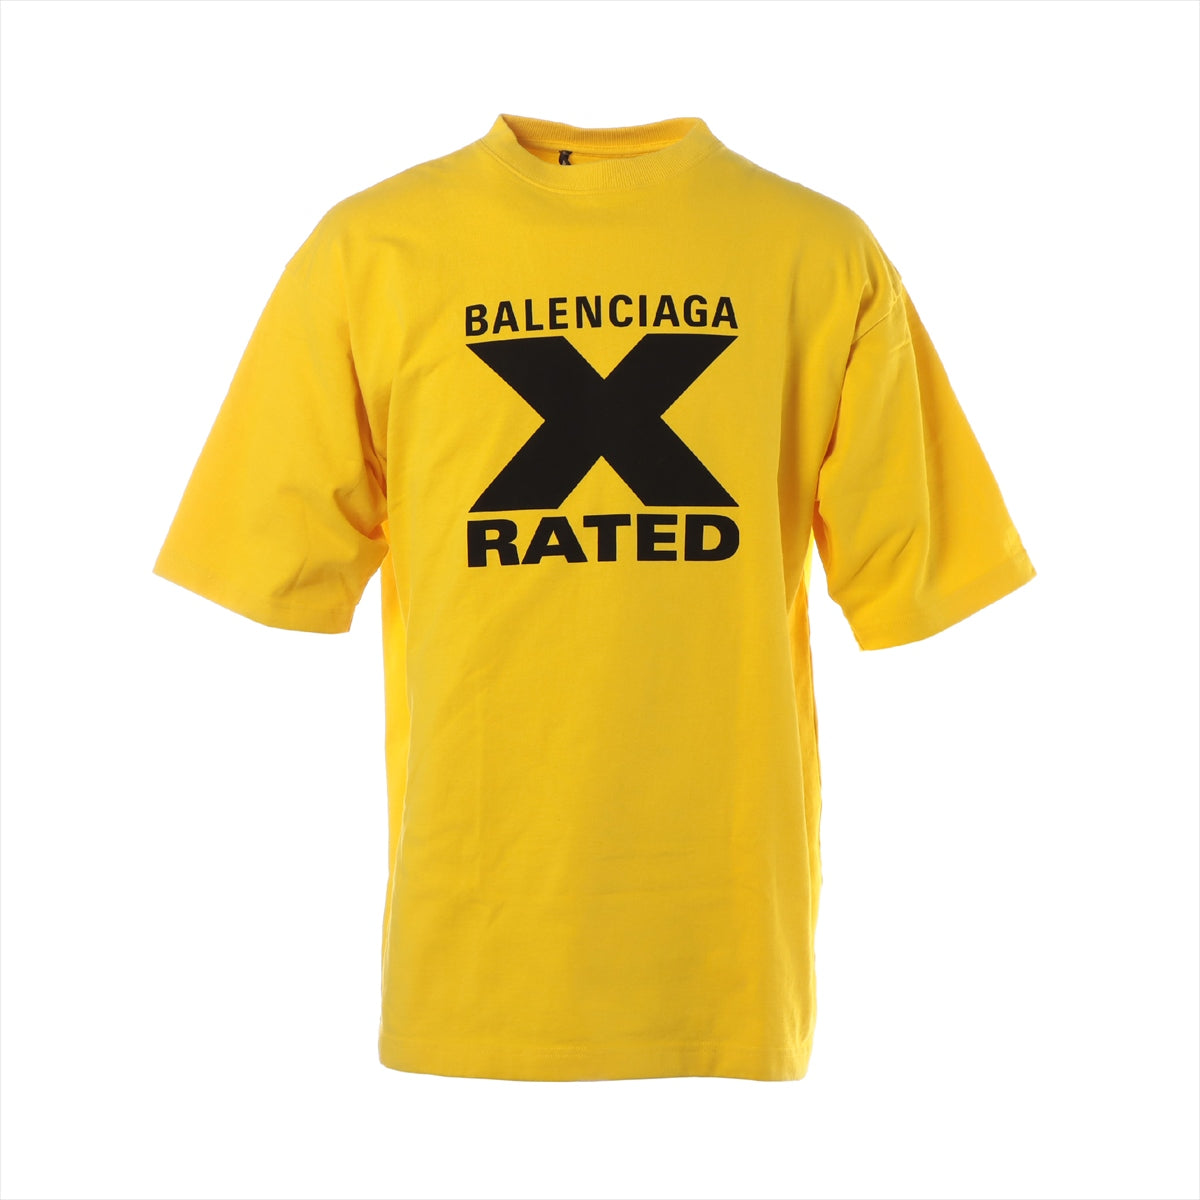 ガジュマルメンズウェアBALENCIAGA/バレンシアガ Tシャツ X-RATED イエロー XS